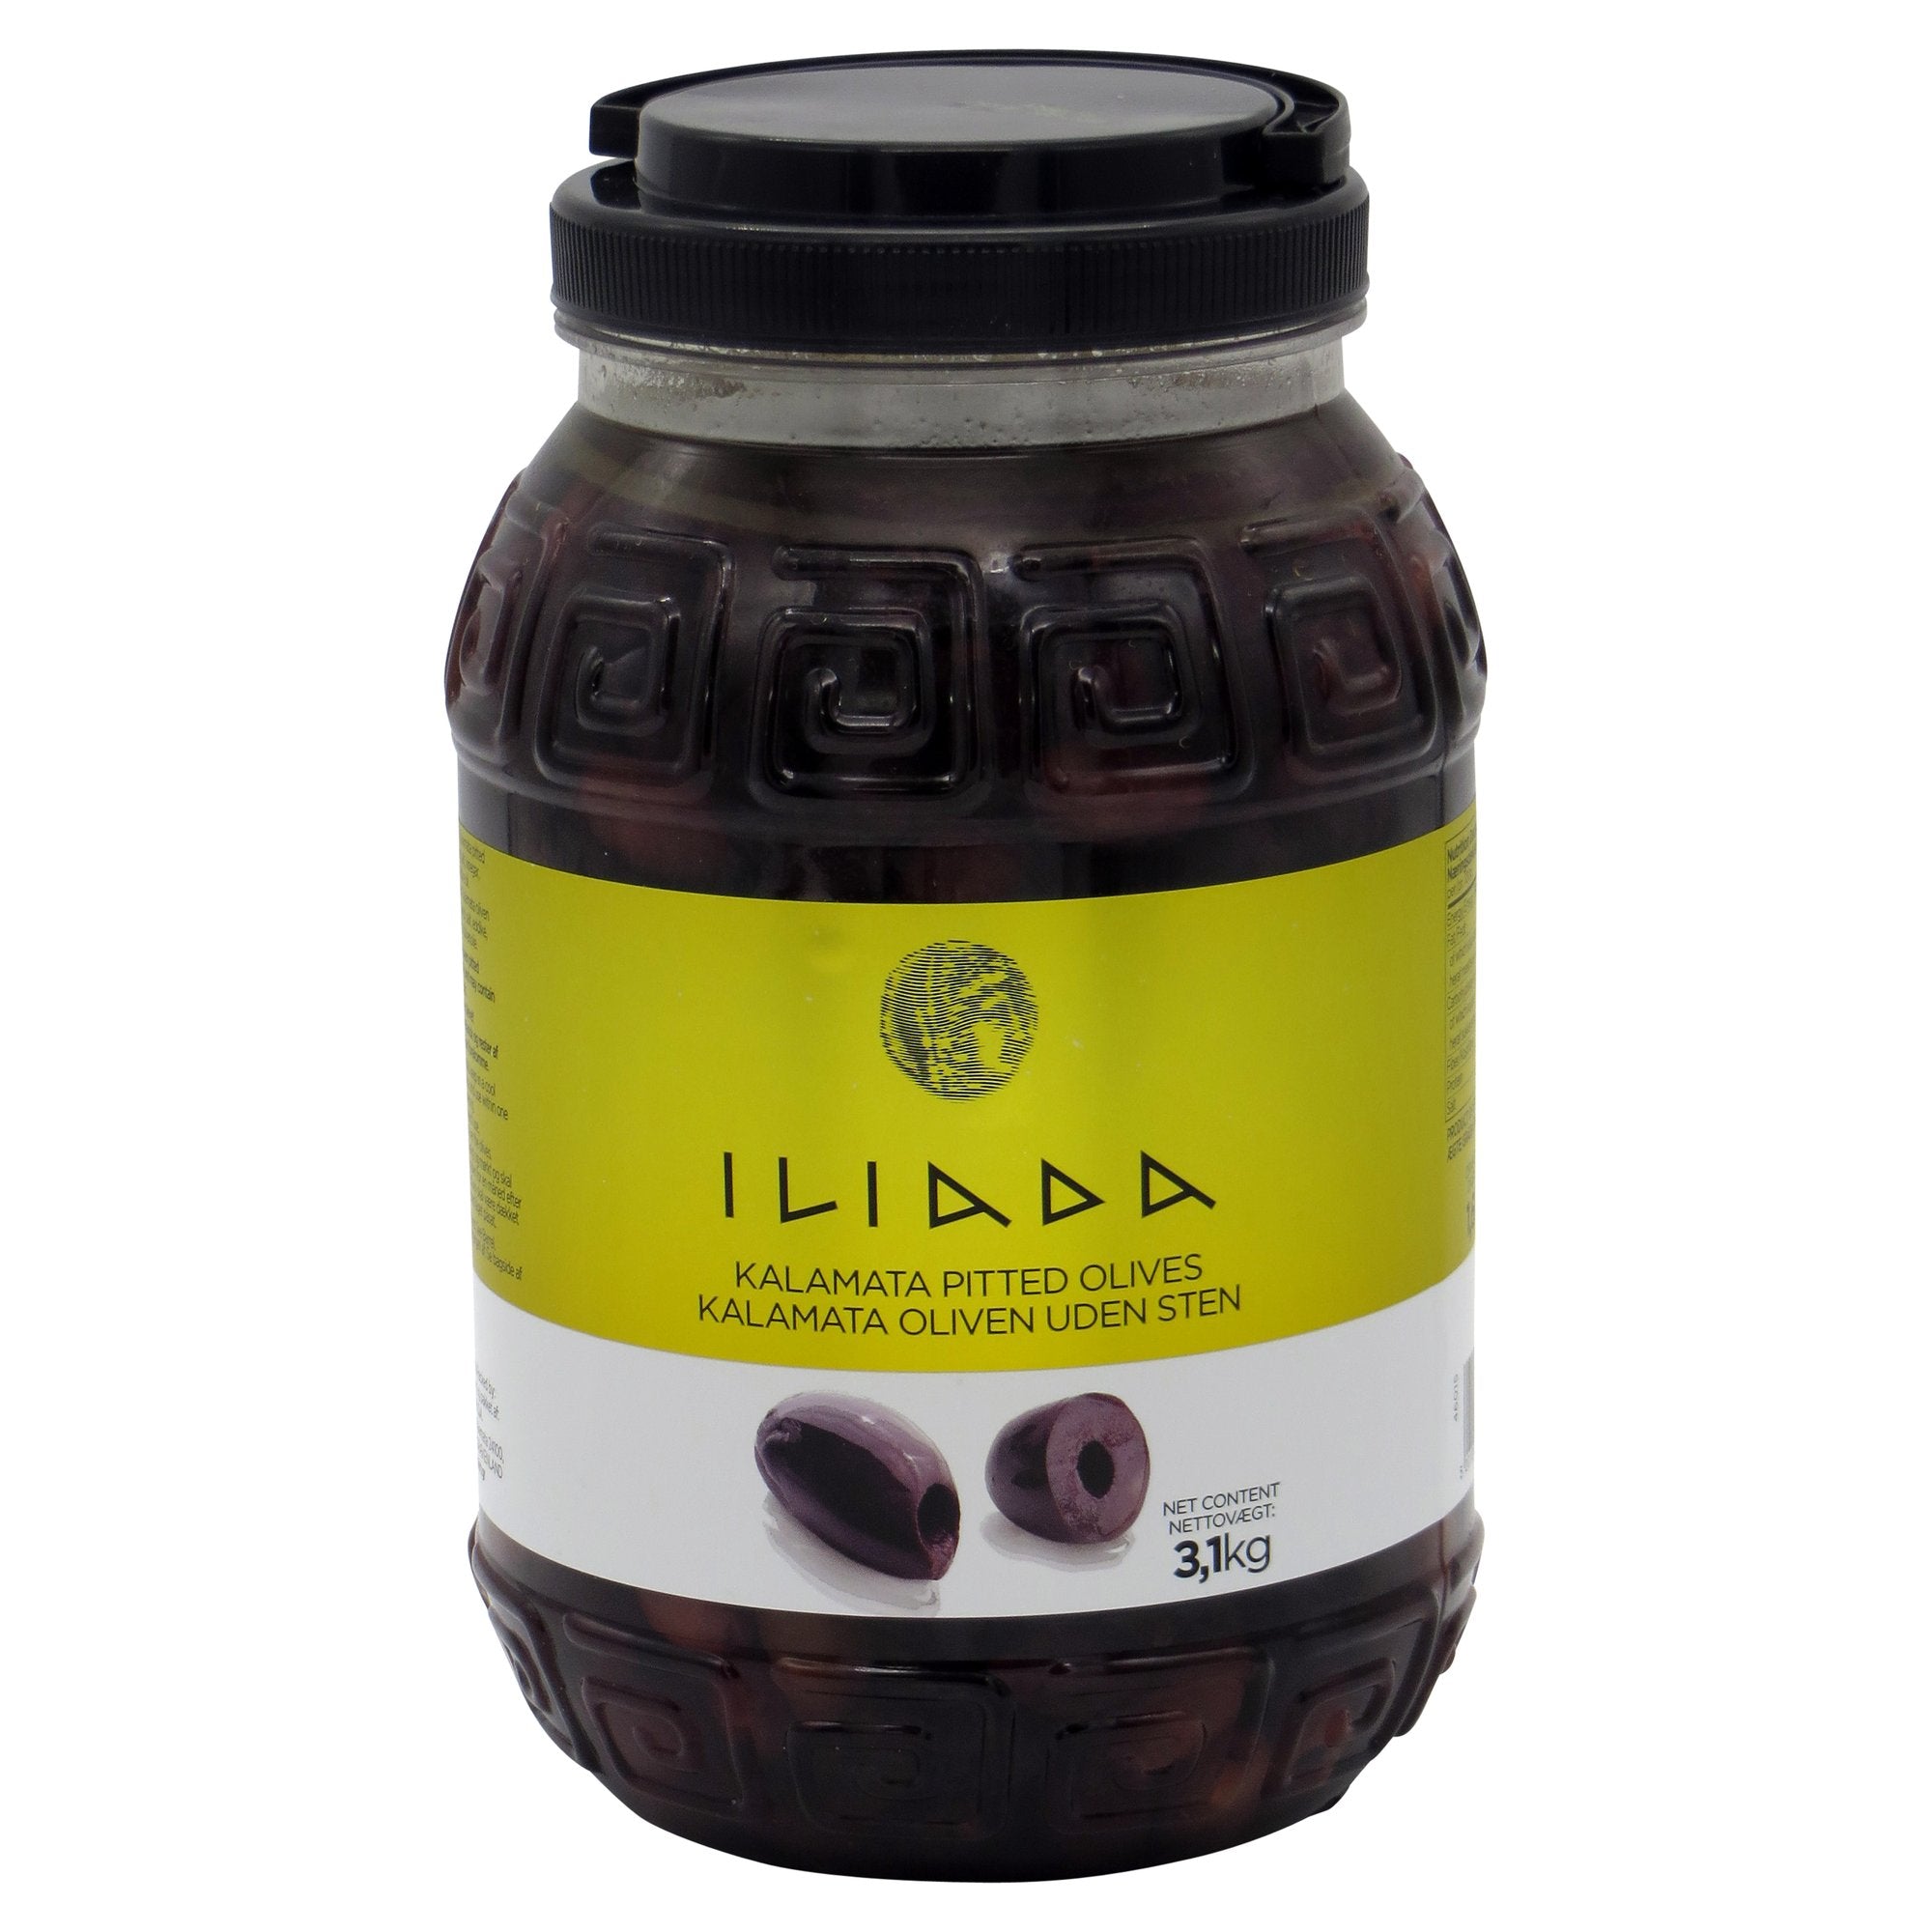 Iliada pitted Kalamata olives